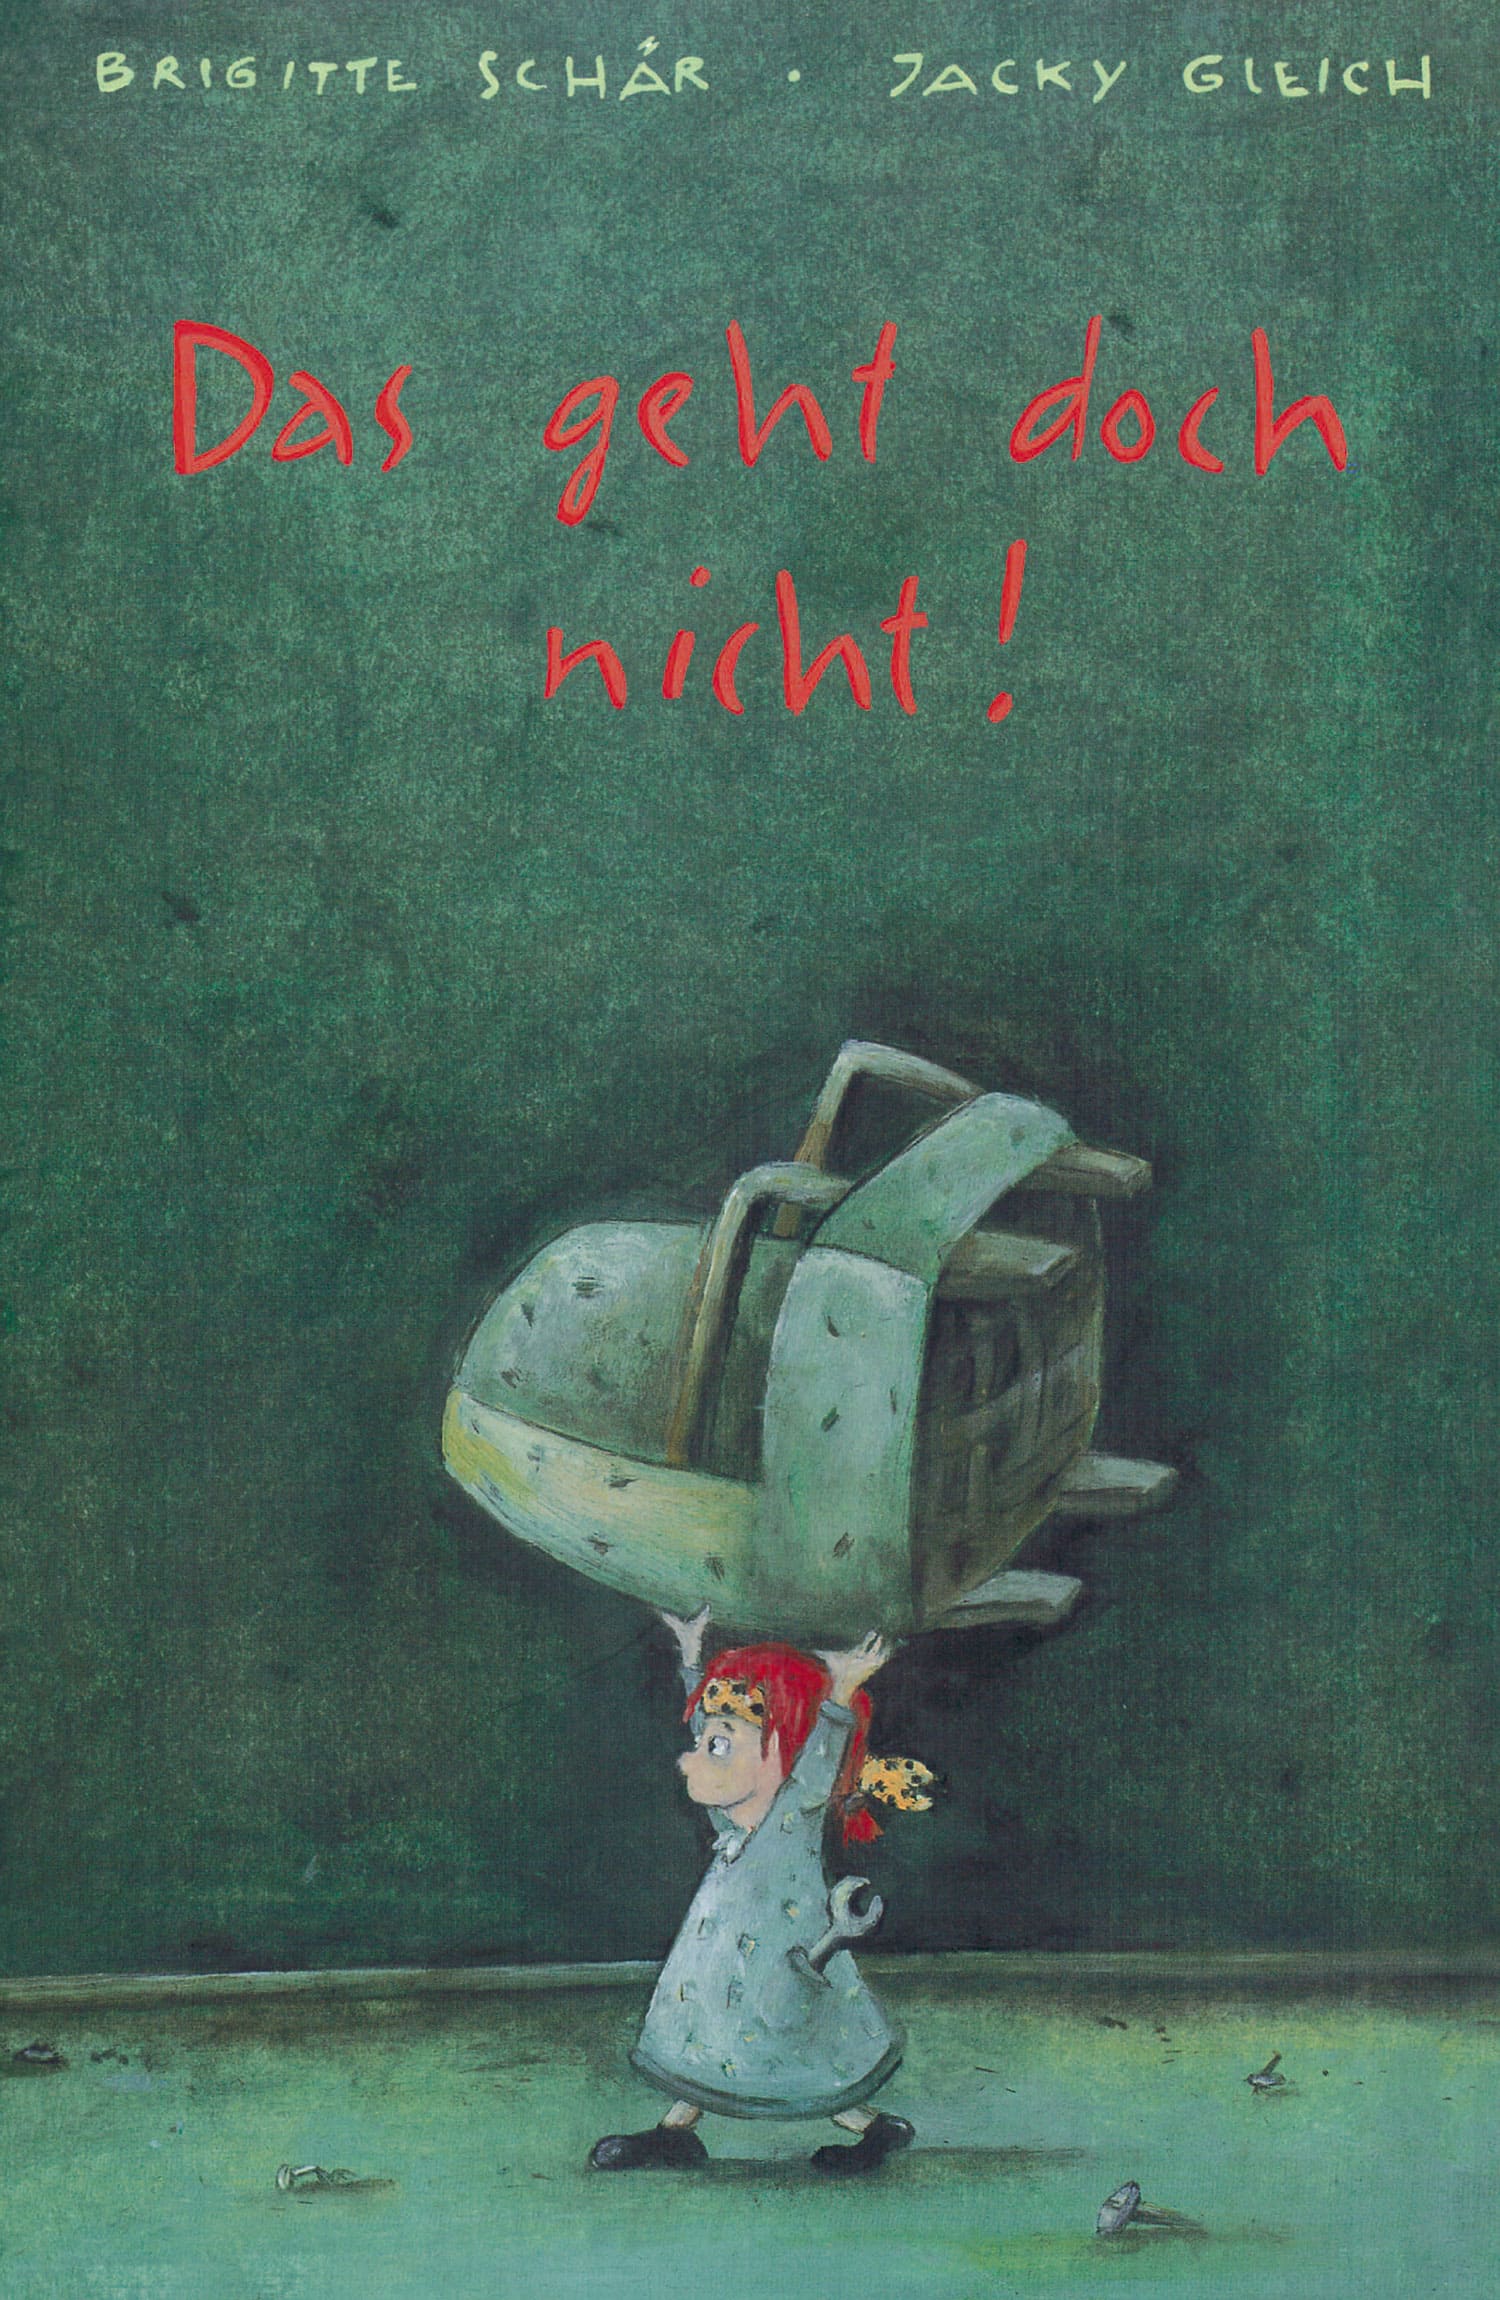 Das geht doch nicht!, ein Kinderbuch von Brigitte Schaer, Illustration von Jacky Gleich, SJW Verlag, Weihnachtsgeschichte